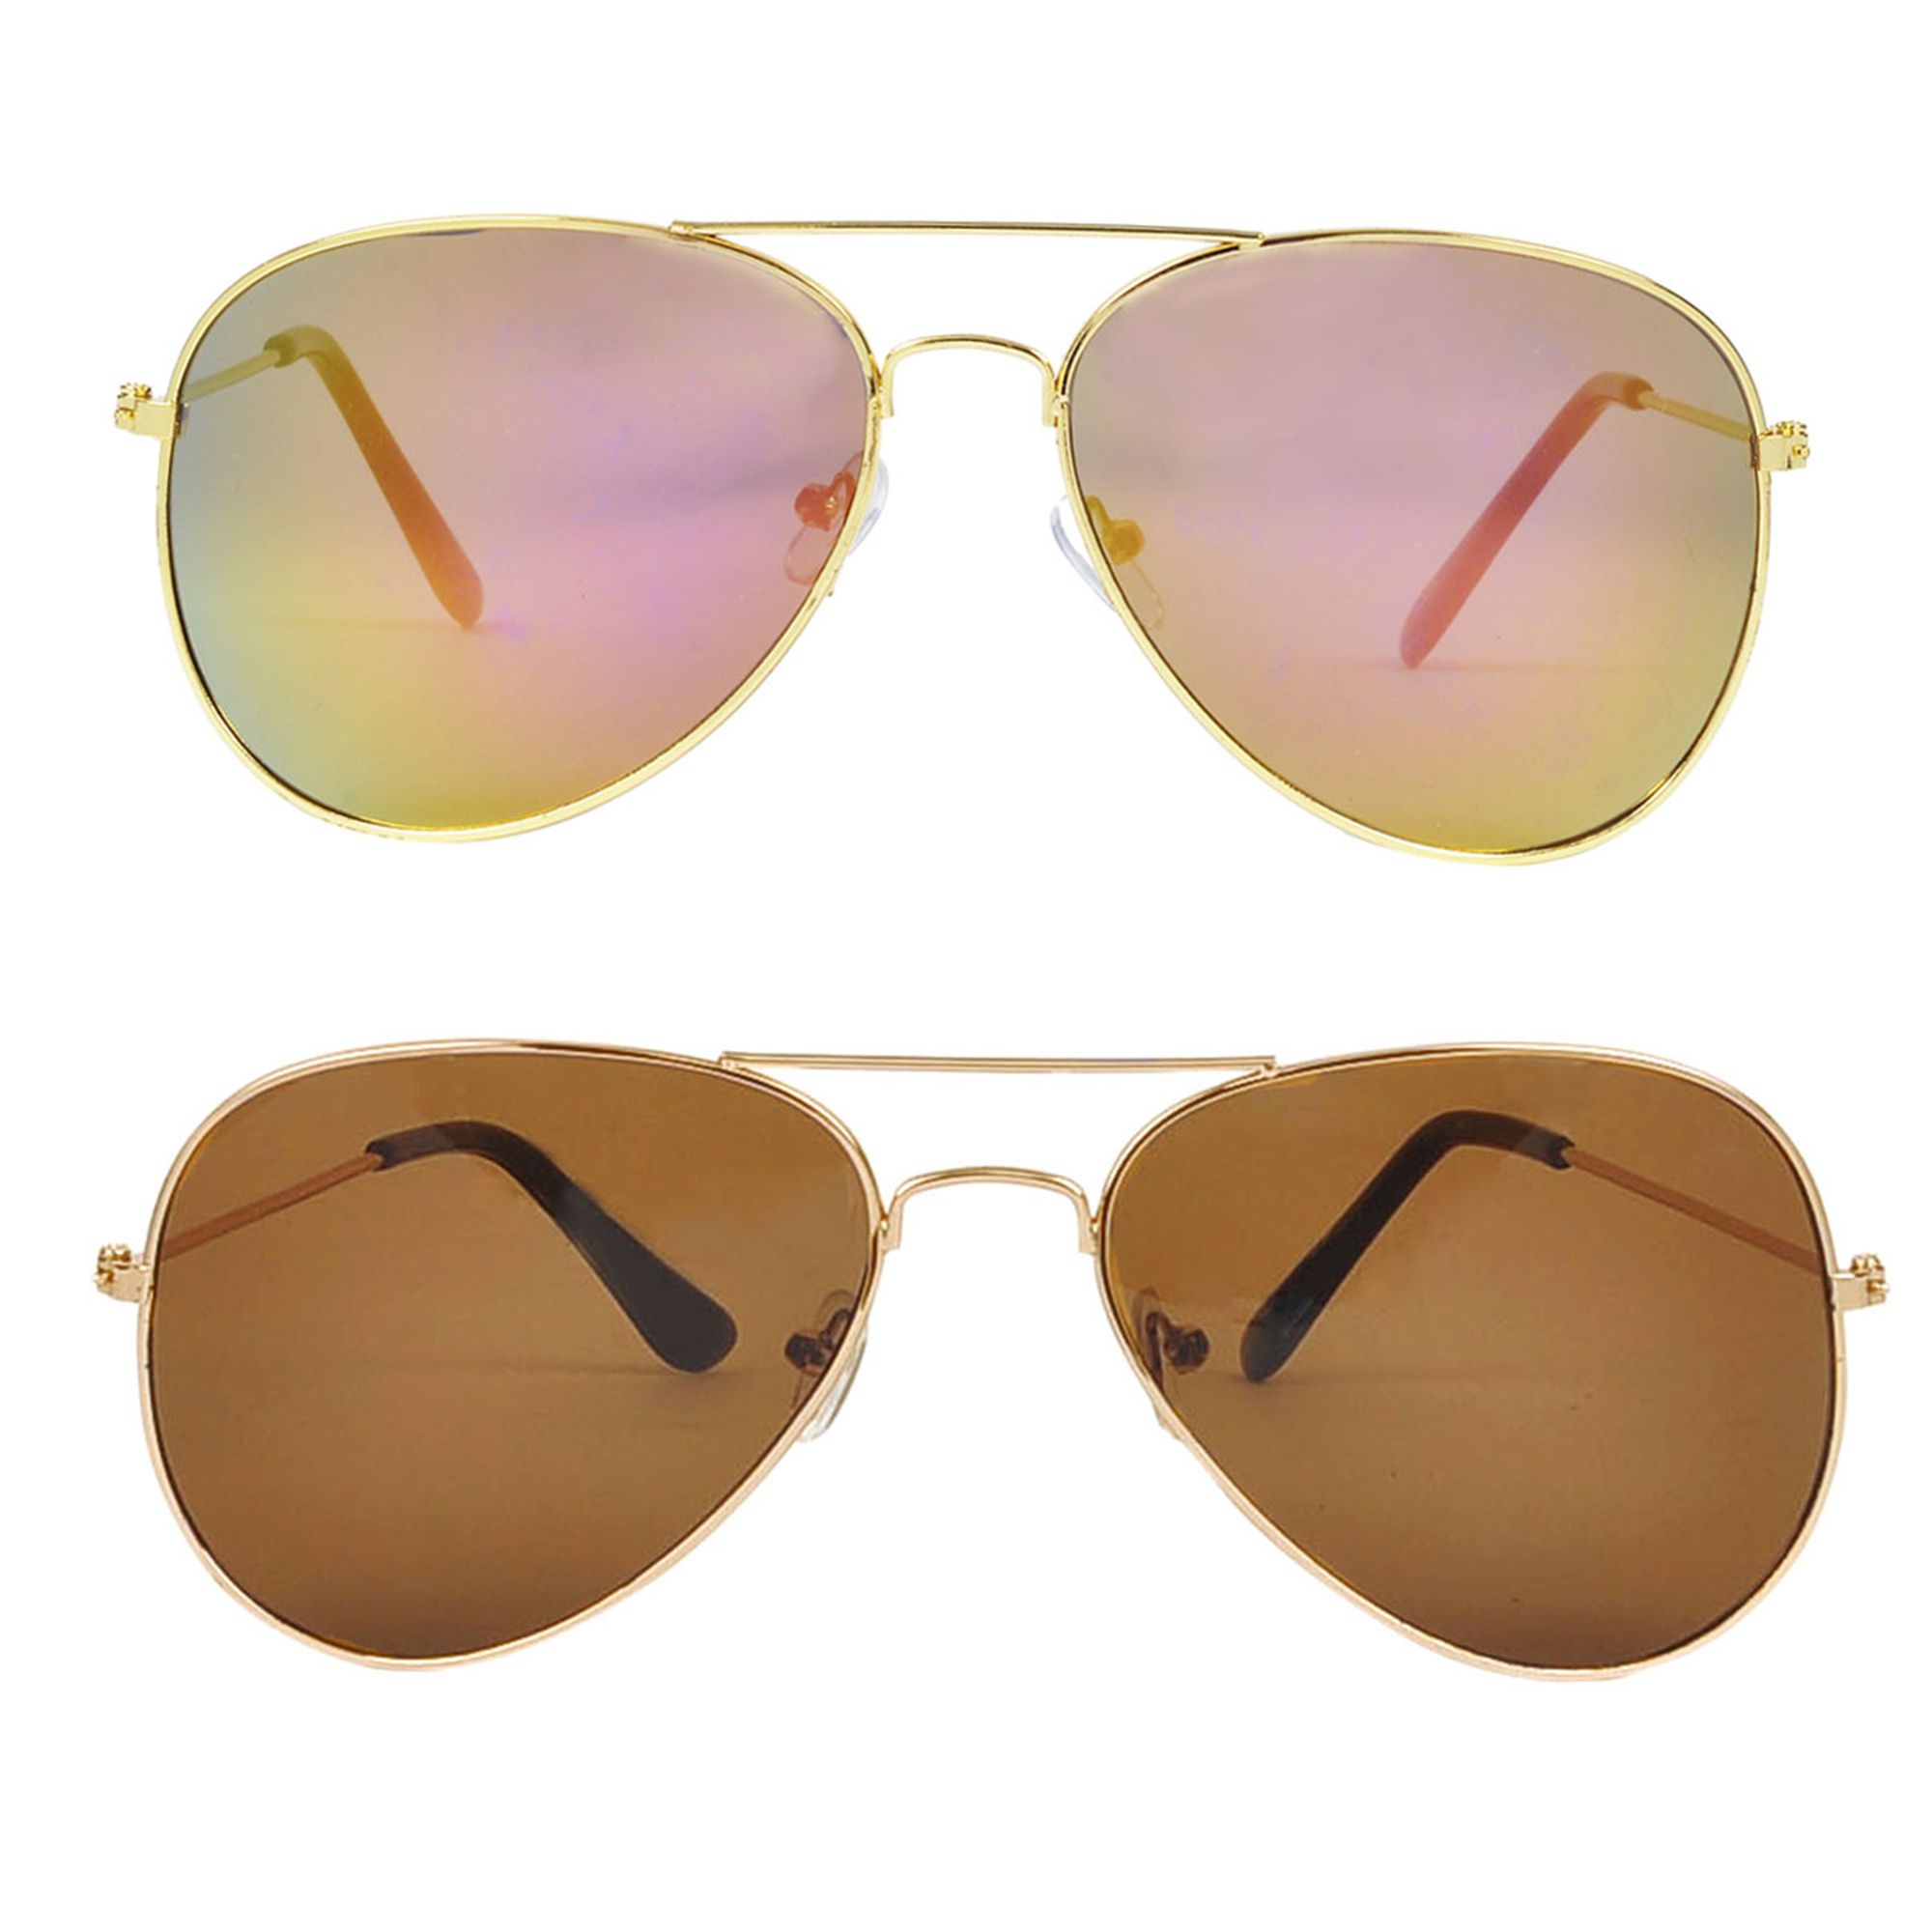 Hawai Sunglasses Combo ( 2 pairs of sunglasses ) - Buy Hawai Sunglasses ...